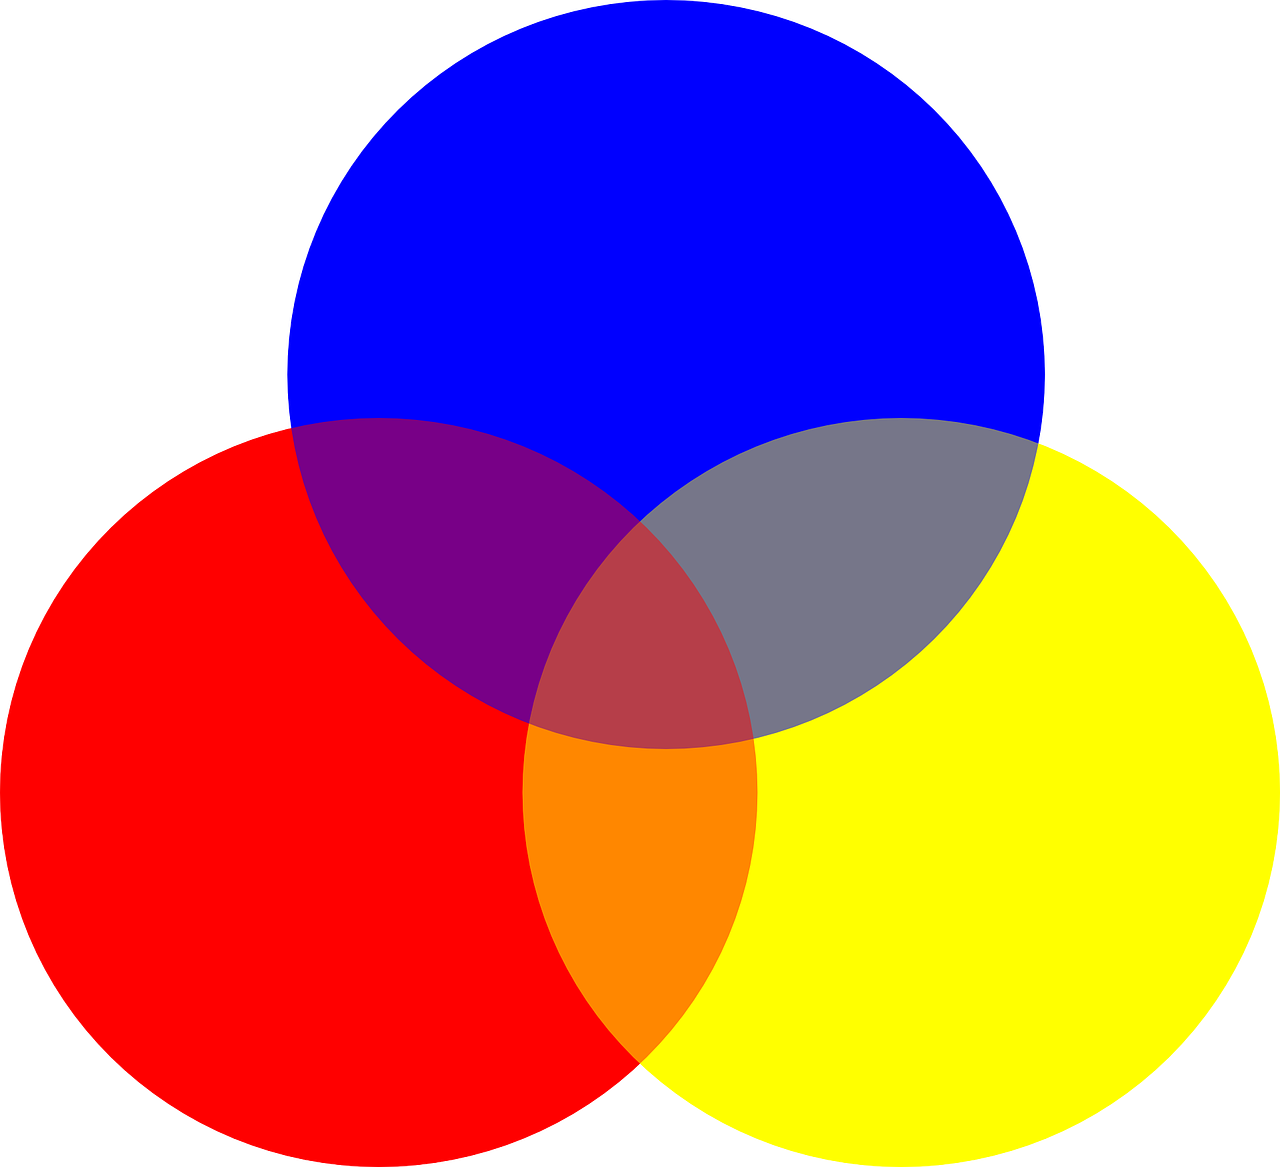 3 круга вместе. «Красный, желтый, синий II» Эльсуорт Келли. Основные цвета. Круг основных цветов. Красный синий желтый.